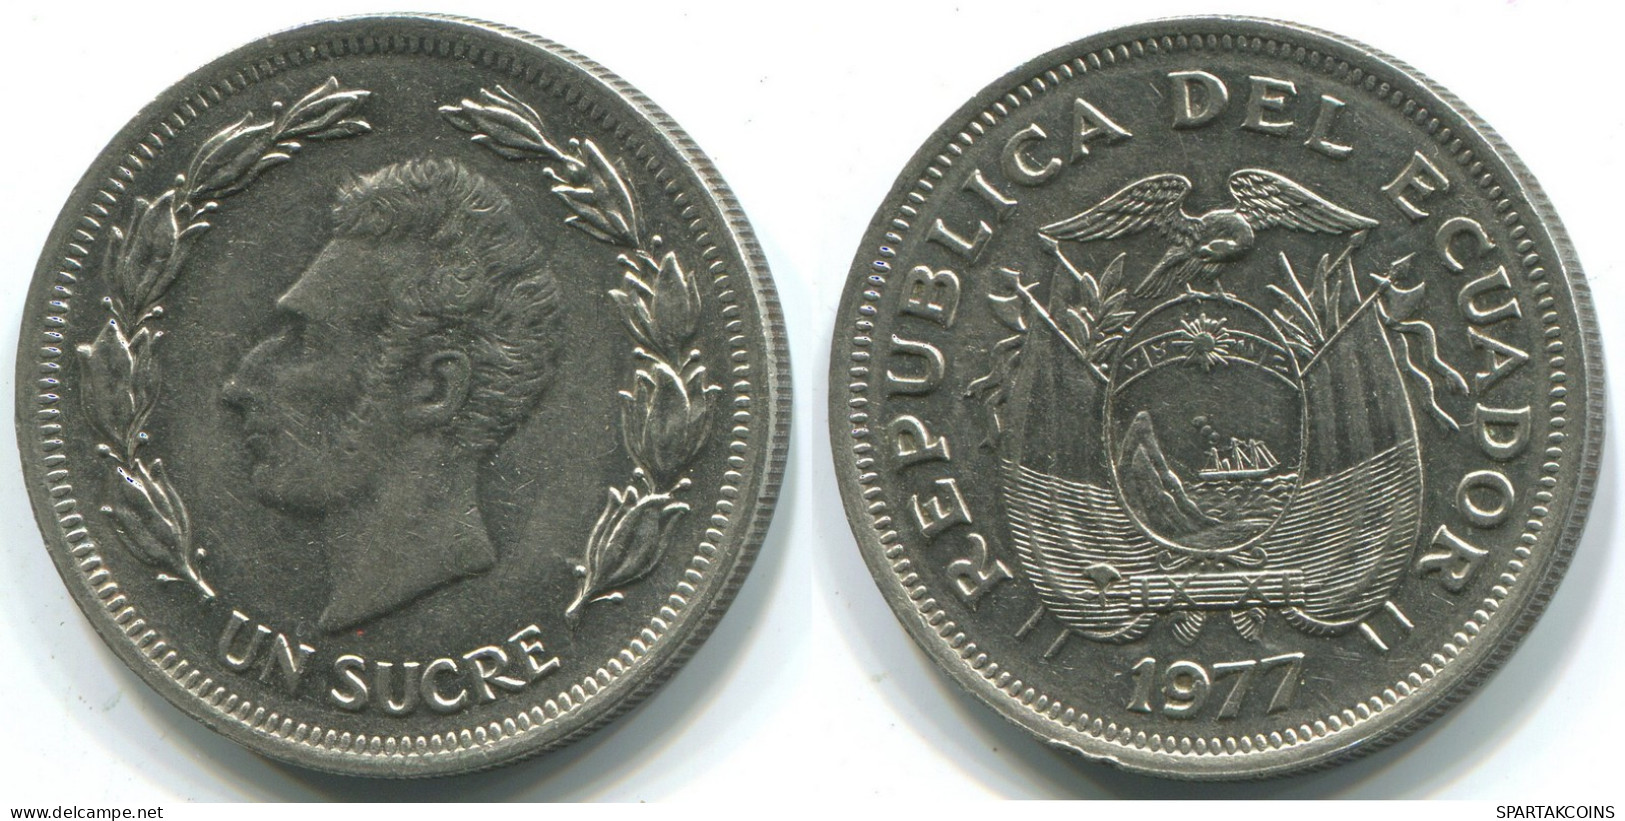 1 SUCRE 1977 ECUADOR Coin #WW1179.U - Ecuador